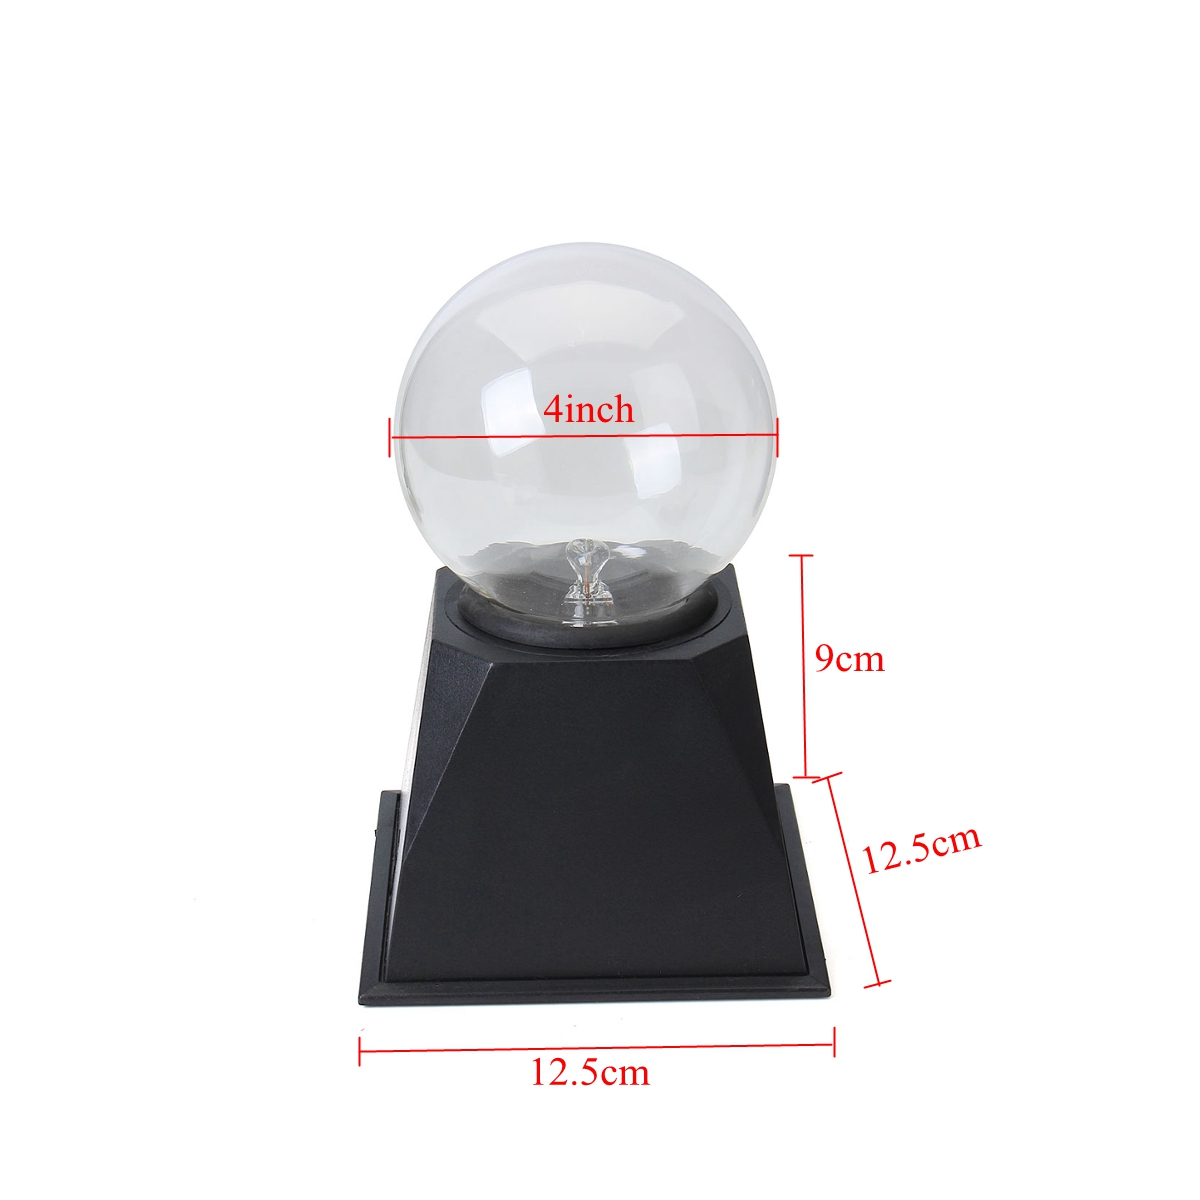 4568-Inches-Plasma-Ball-Sphere-Light-Crystal-Light-Magic-Desk-Lamp-Novelty-Light-Home-Decor-1446931